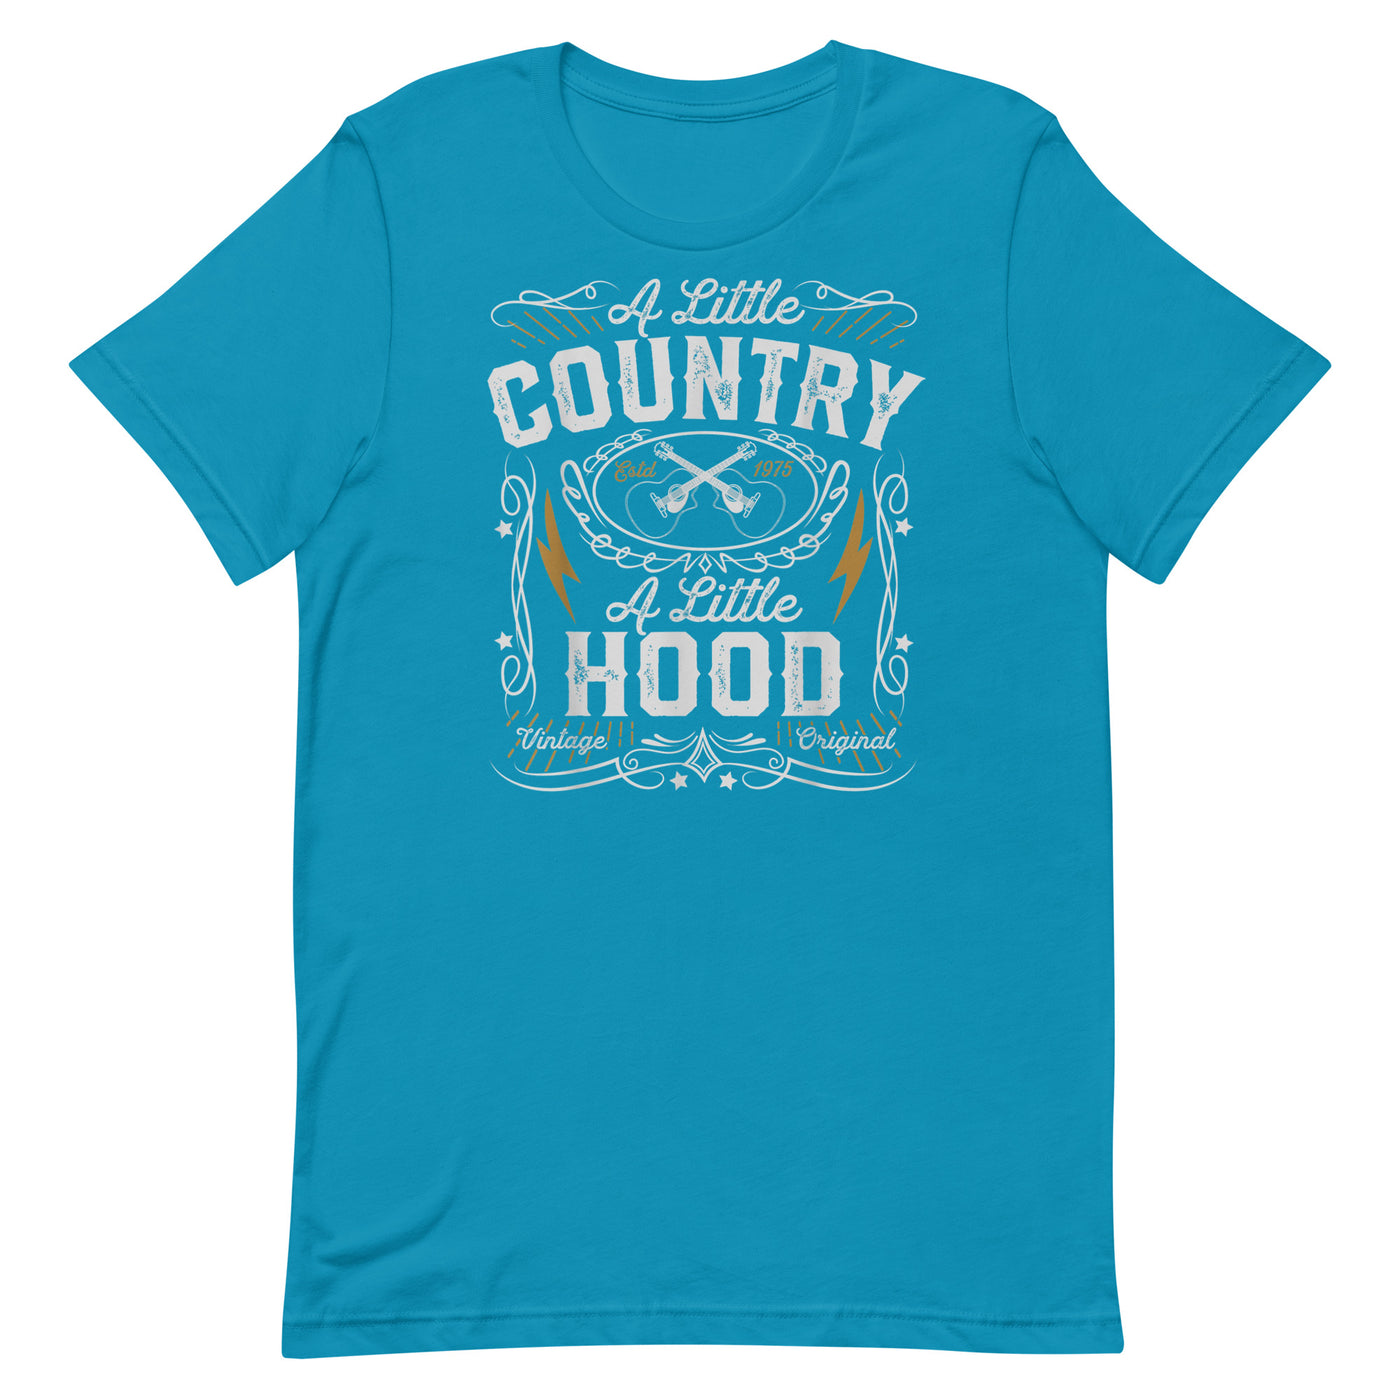 A LITTLE COUNTRY A LITTLE HOOD Unisex t-shirt - Hiphopya